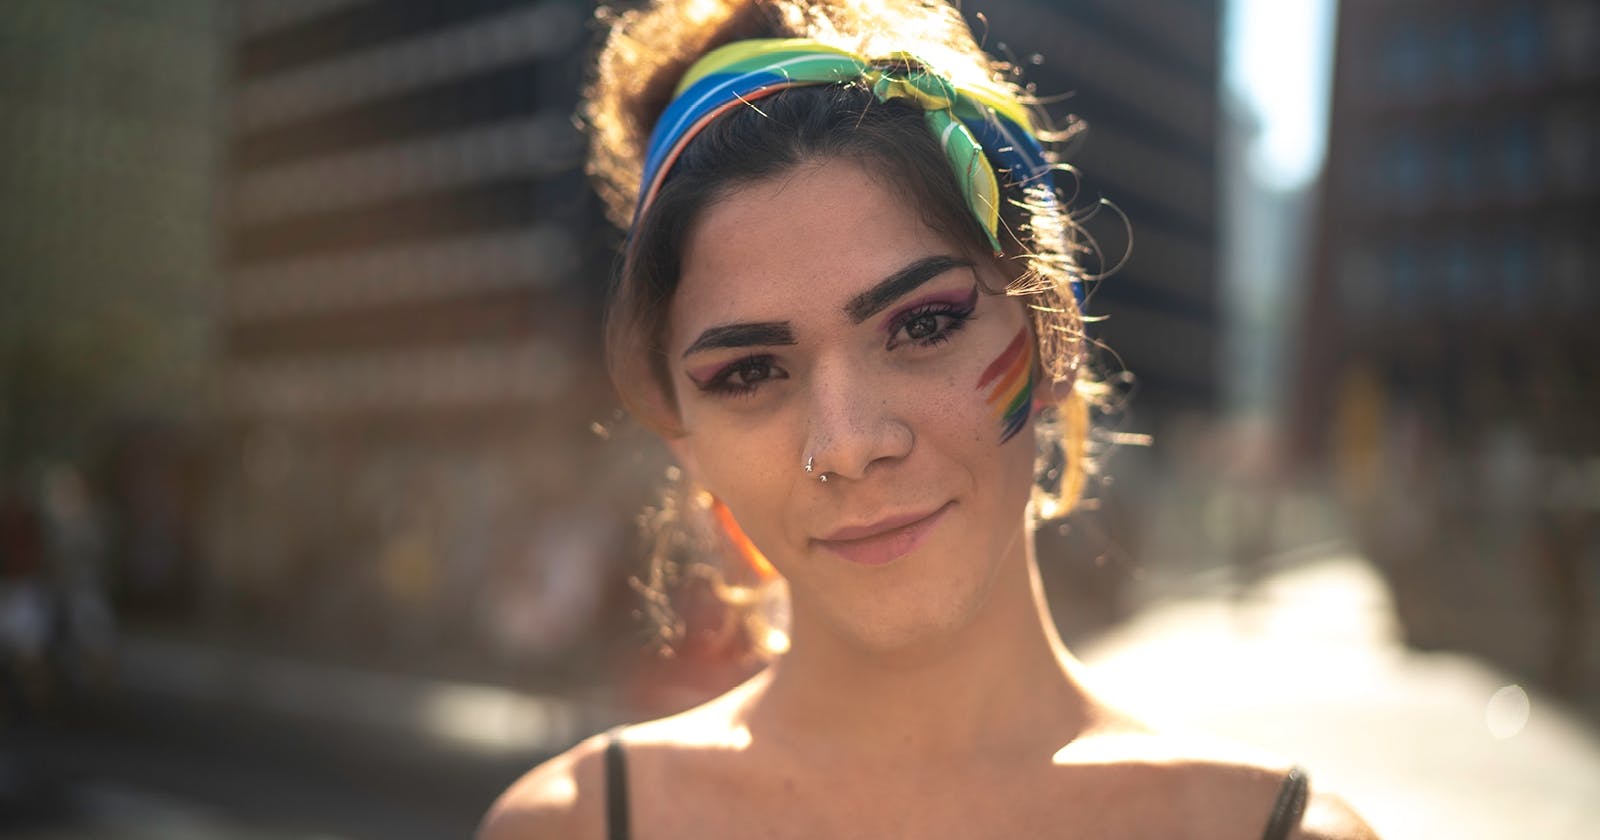 Portrait einer  jungen Frau mit Pride-Flagge auf der Wange und buntem Tuch in den Haaren